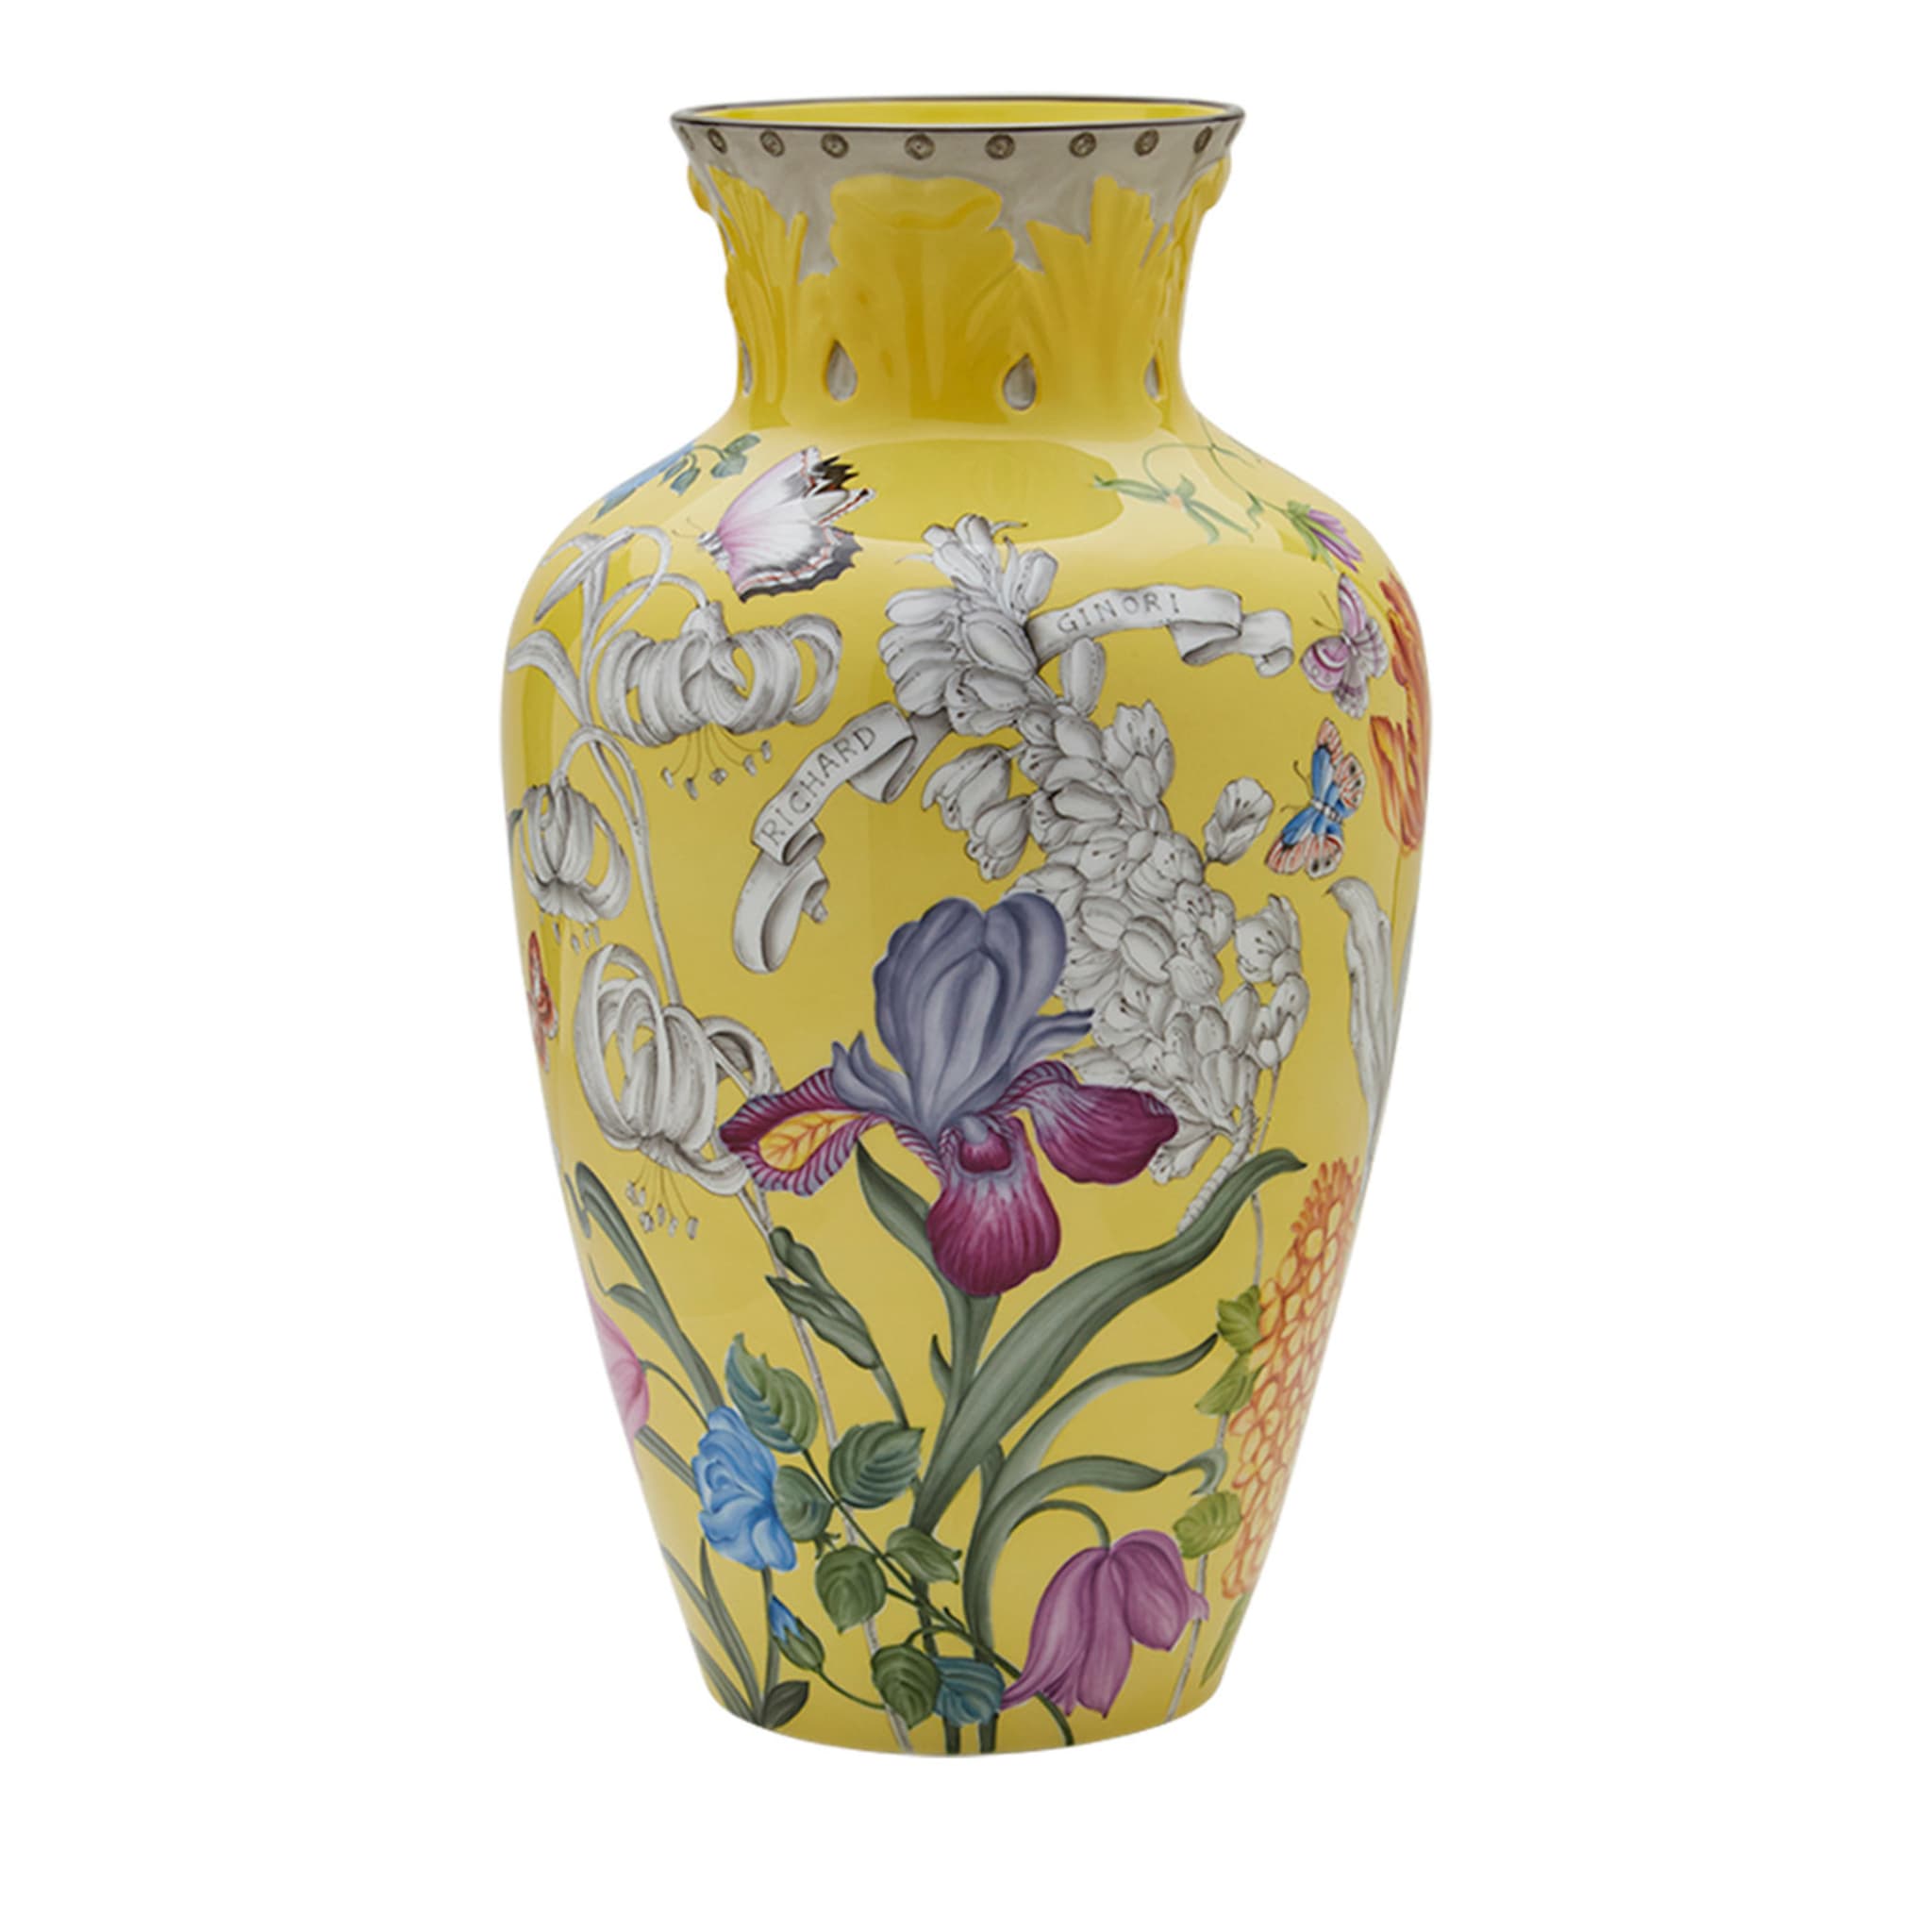 Iris Garden Tall Yellow Vase - Main view